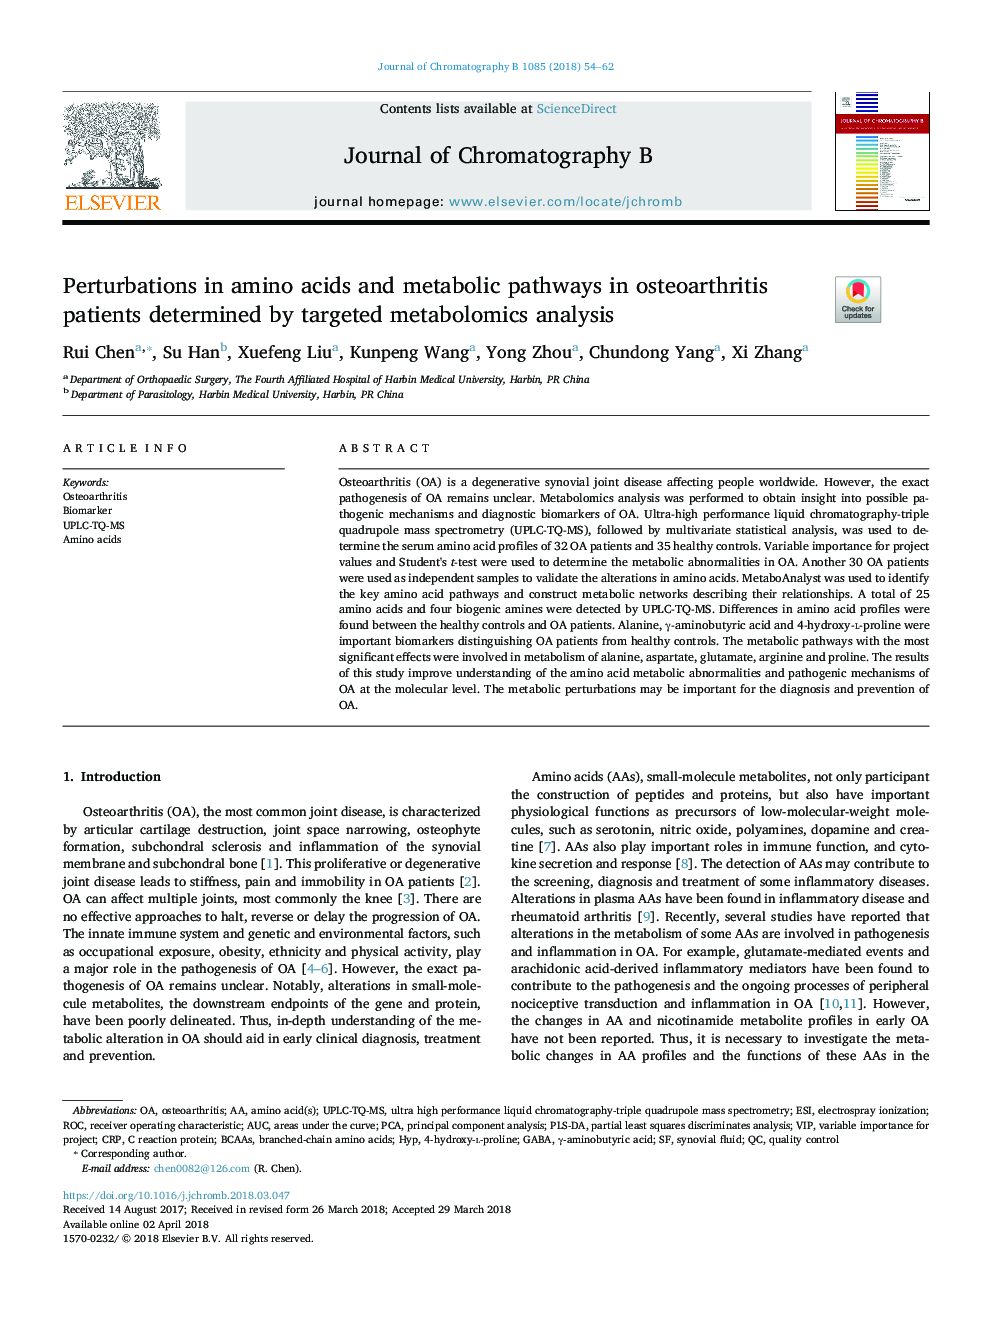 اختلالات در اسیدهای آمینه و مسیرهای متابولیک در بیماران مبتلا به استئوآرتریت تعریف شده توسط تجزیه و تحلیل متابولومیک هدف 